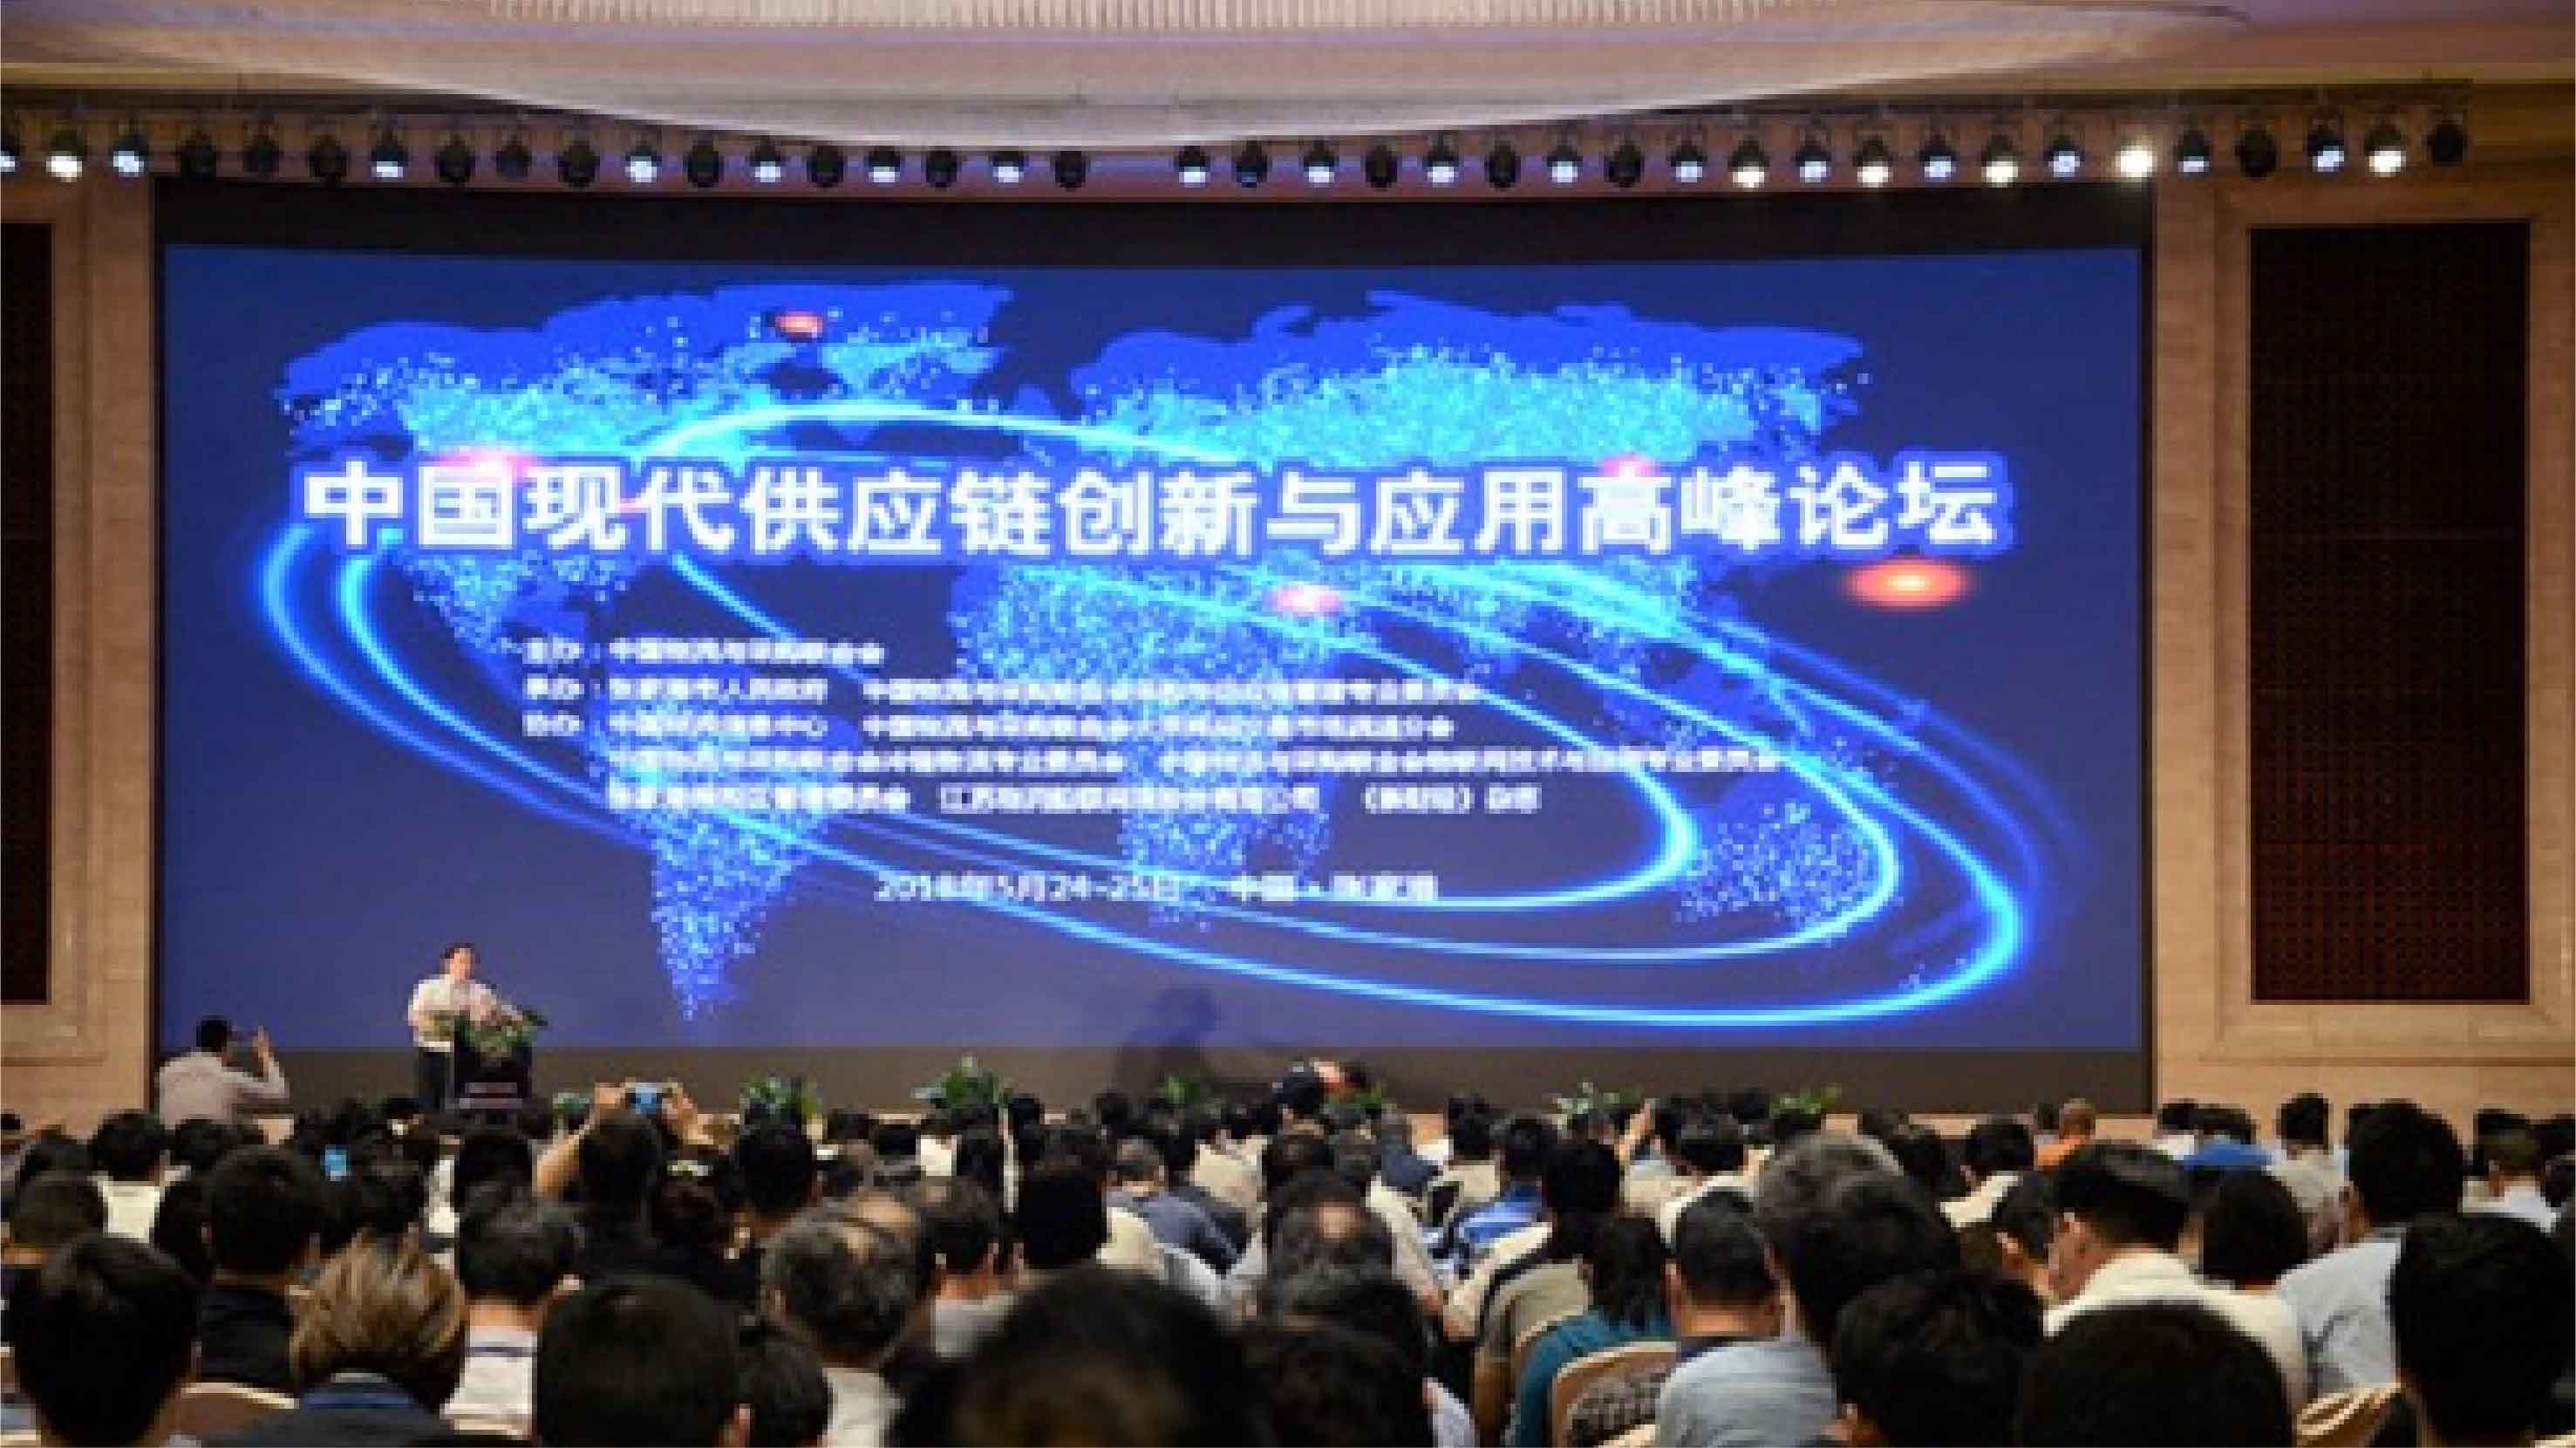 中国现代供应链创新与应用高峰论坛召开